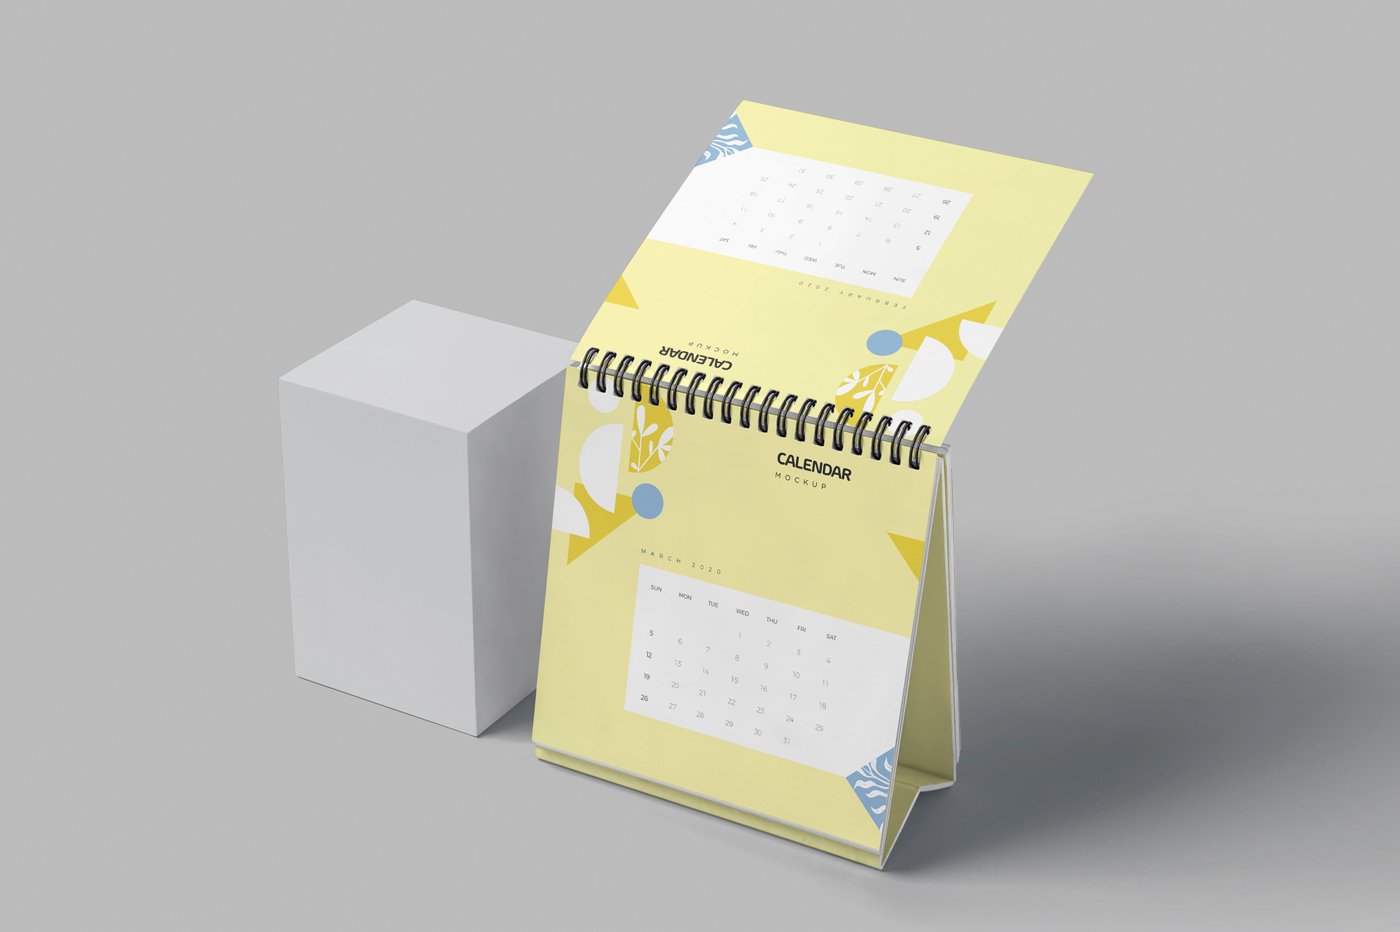 127 桌面迷你小台历样机 Mini Desk Calendar Mockups